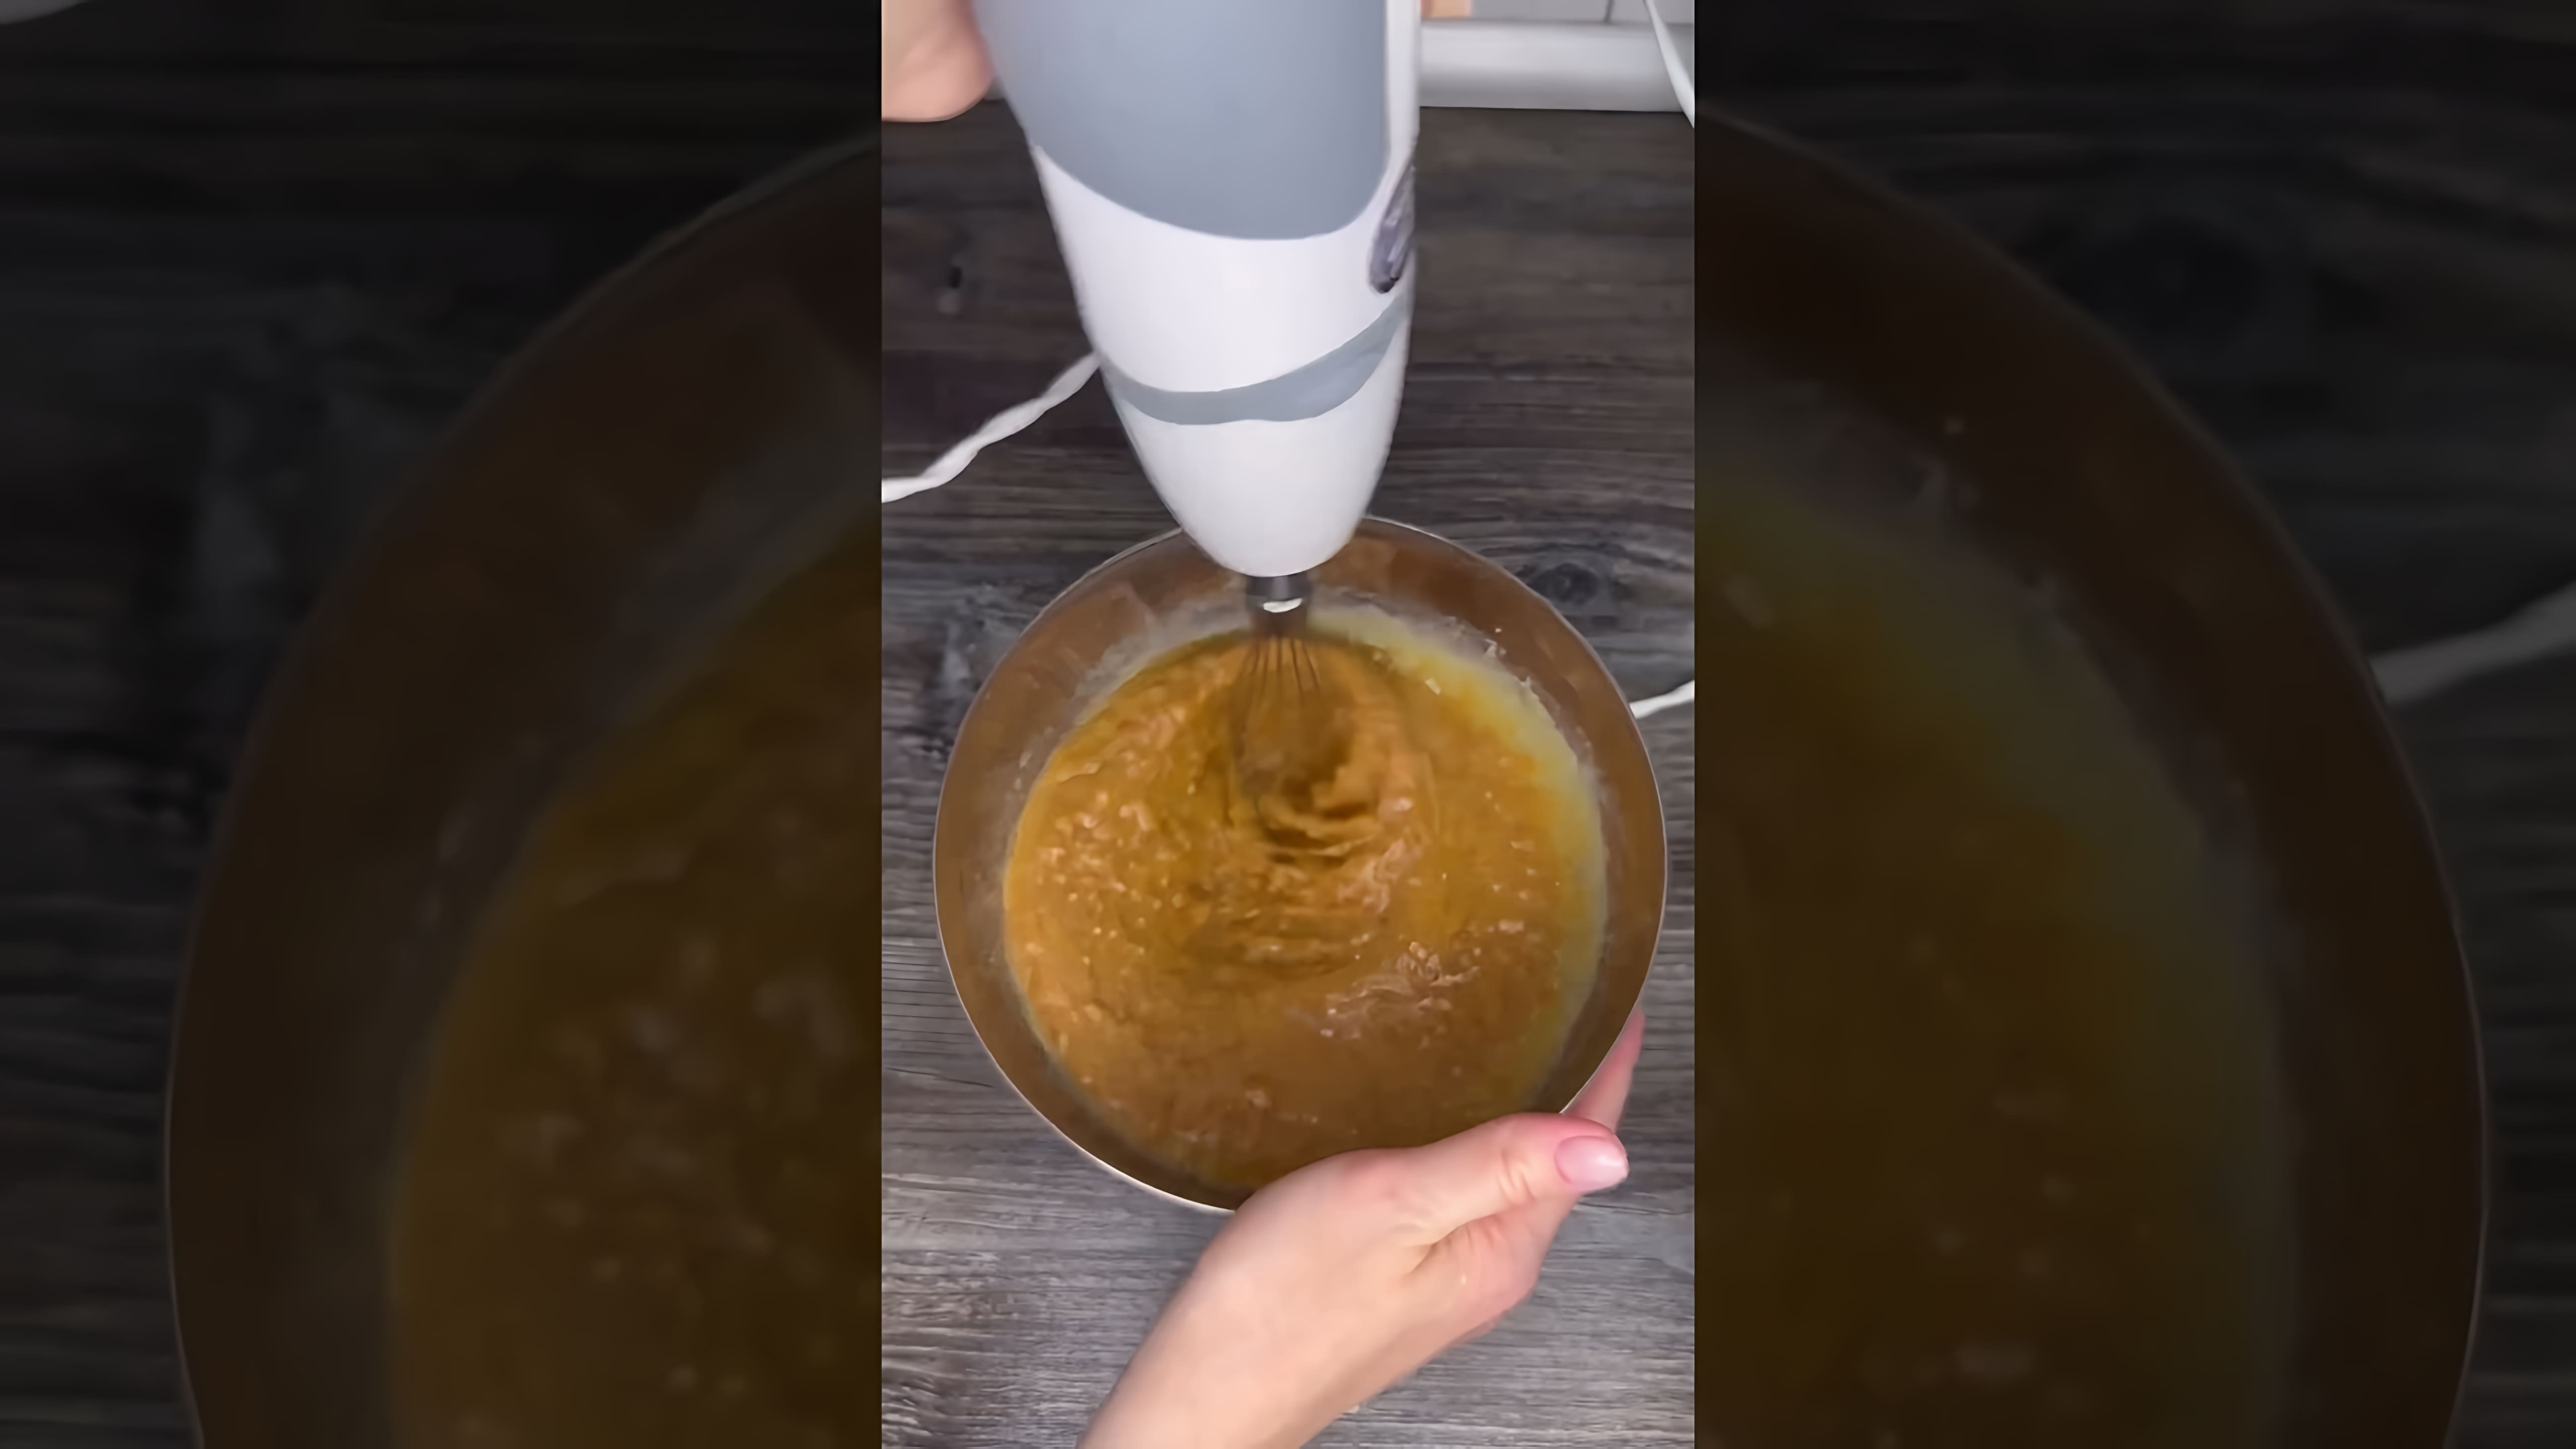 В этом видео демонстрируется рецепт приготовления пятиминутного торта "Муравейник" без выпечки